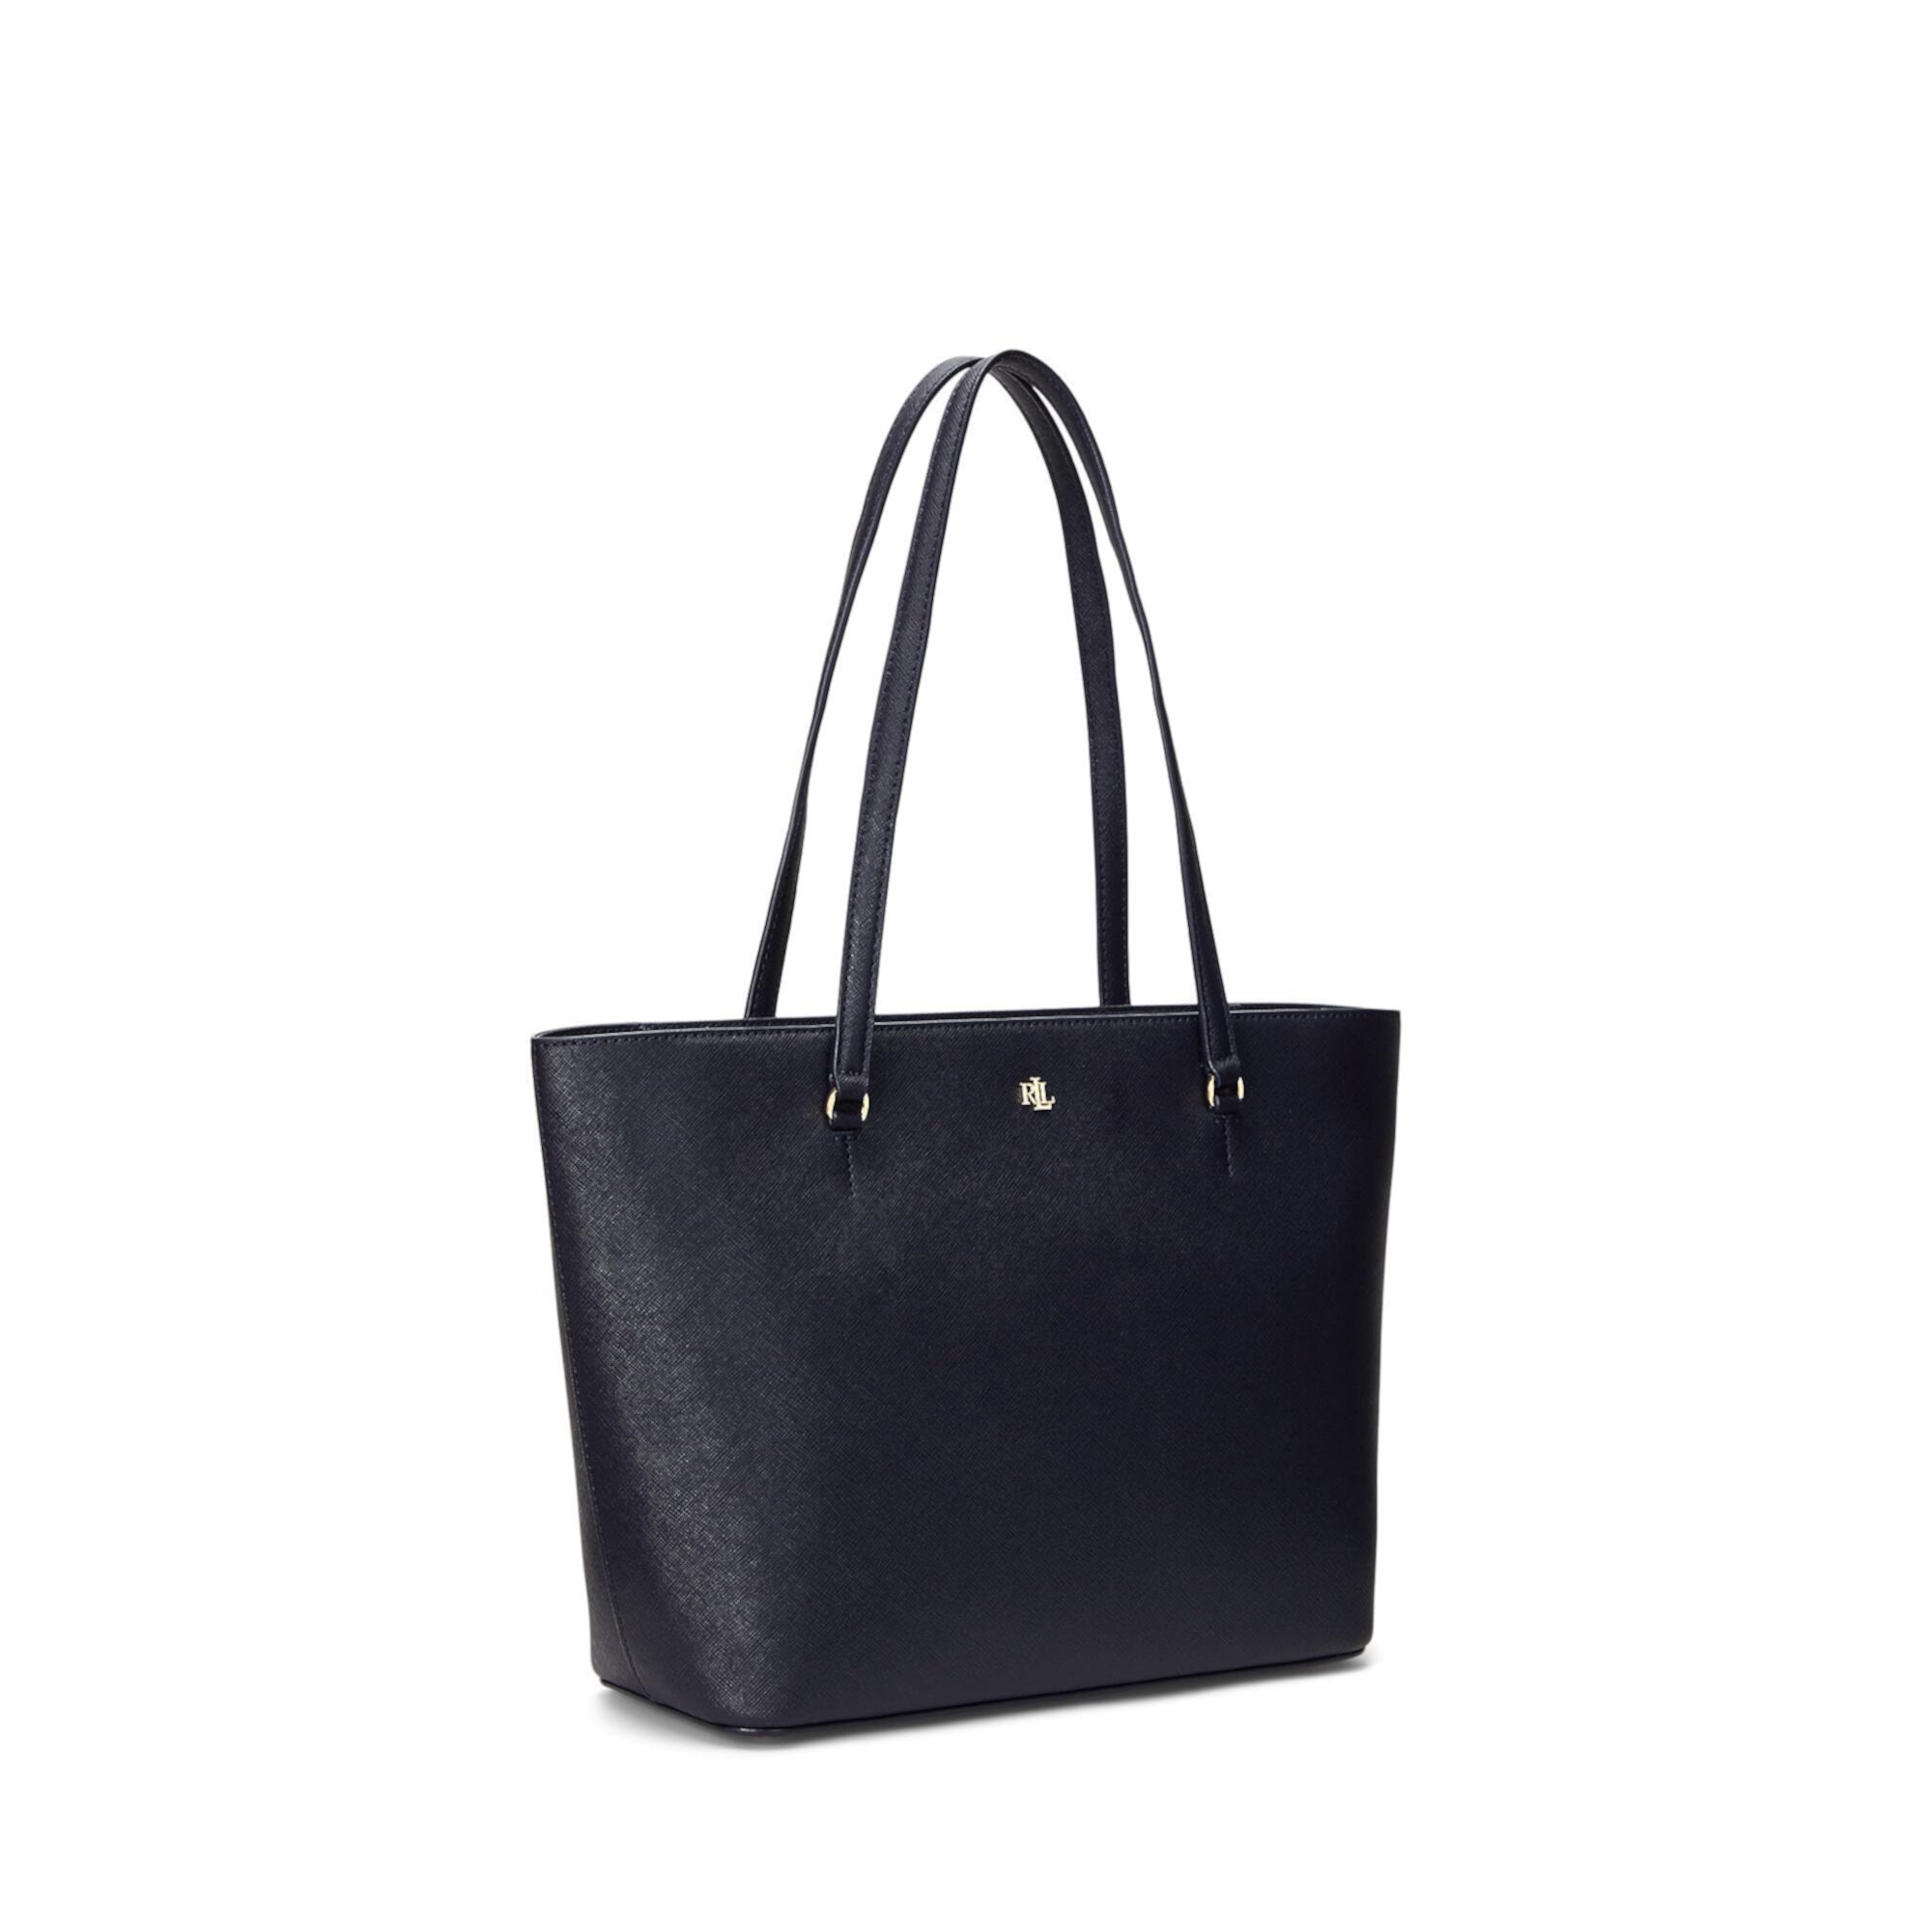 Кожаная сумка-тоут Karly среднего размера с перекрестием LAUREN Ralph Lauren